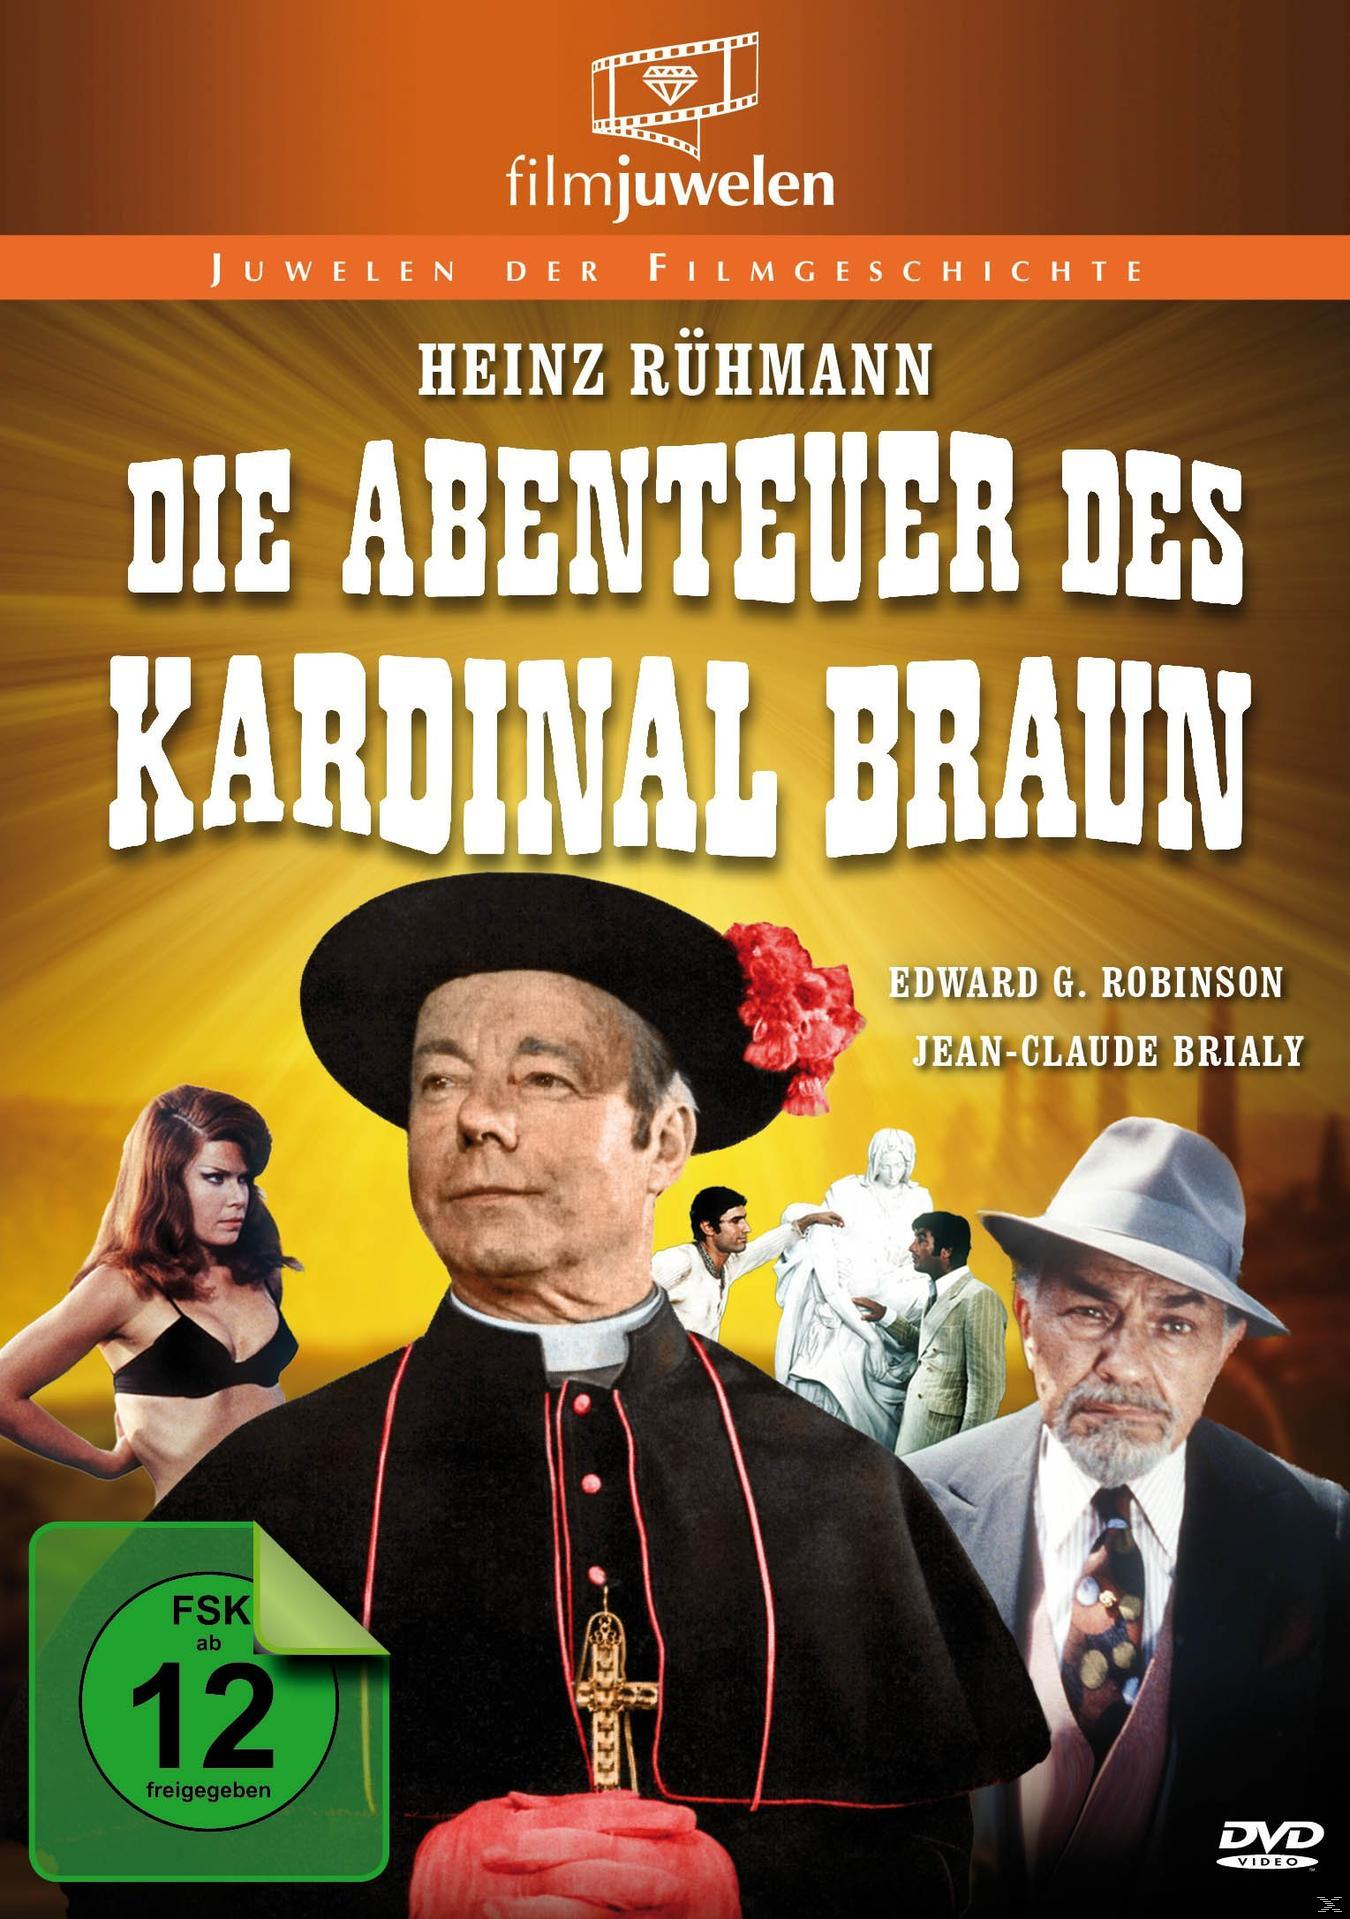 Kardinal DVD Abenteuer des Braun Die